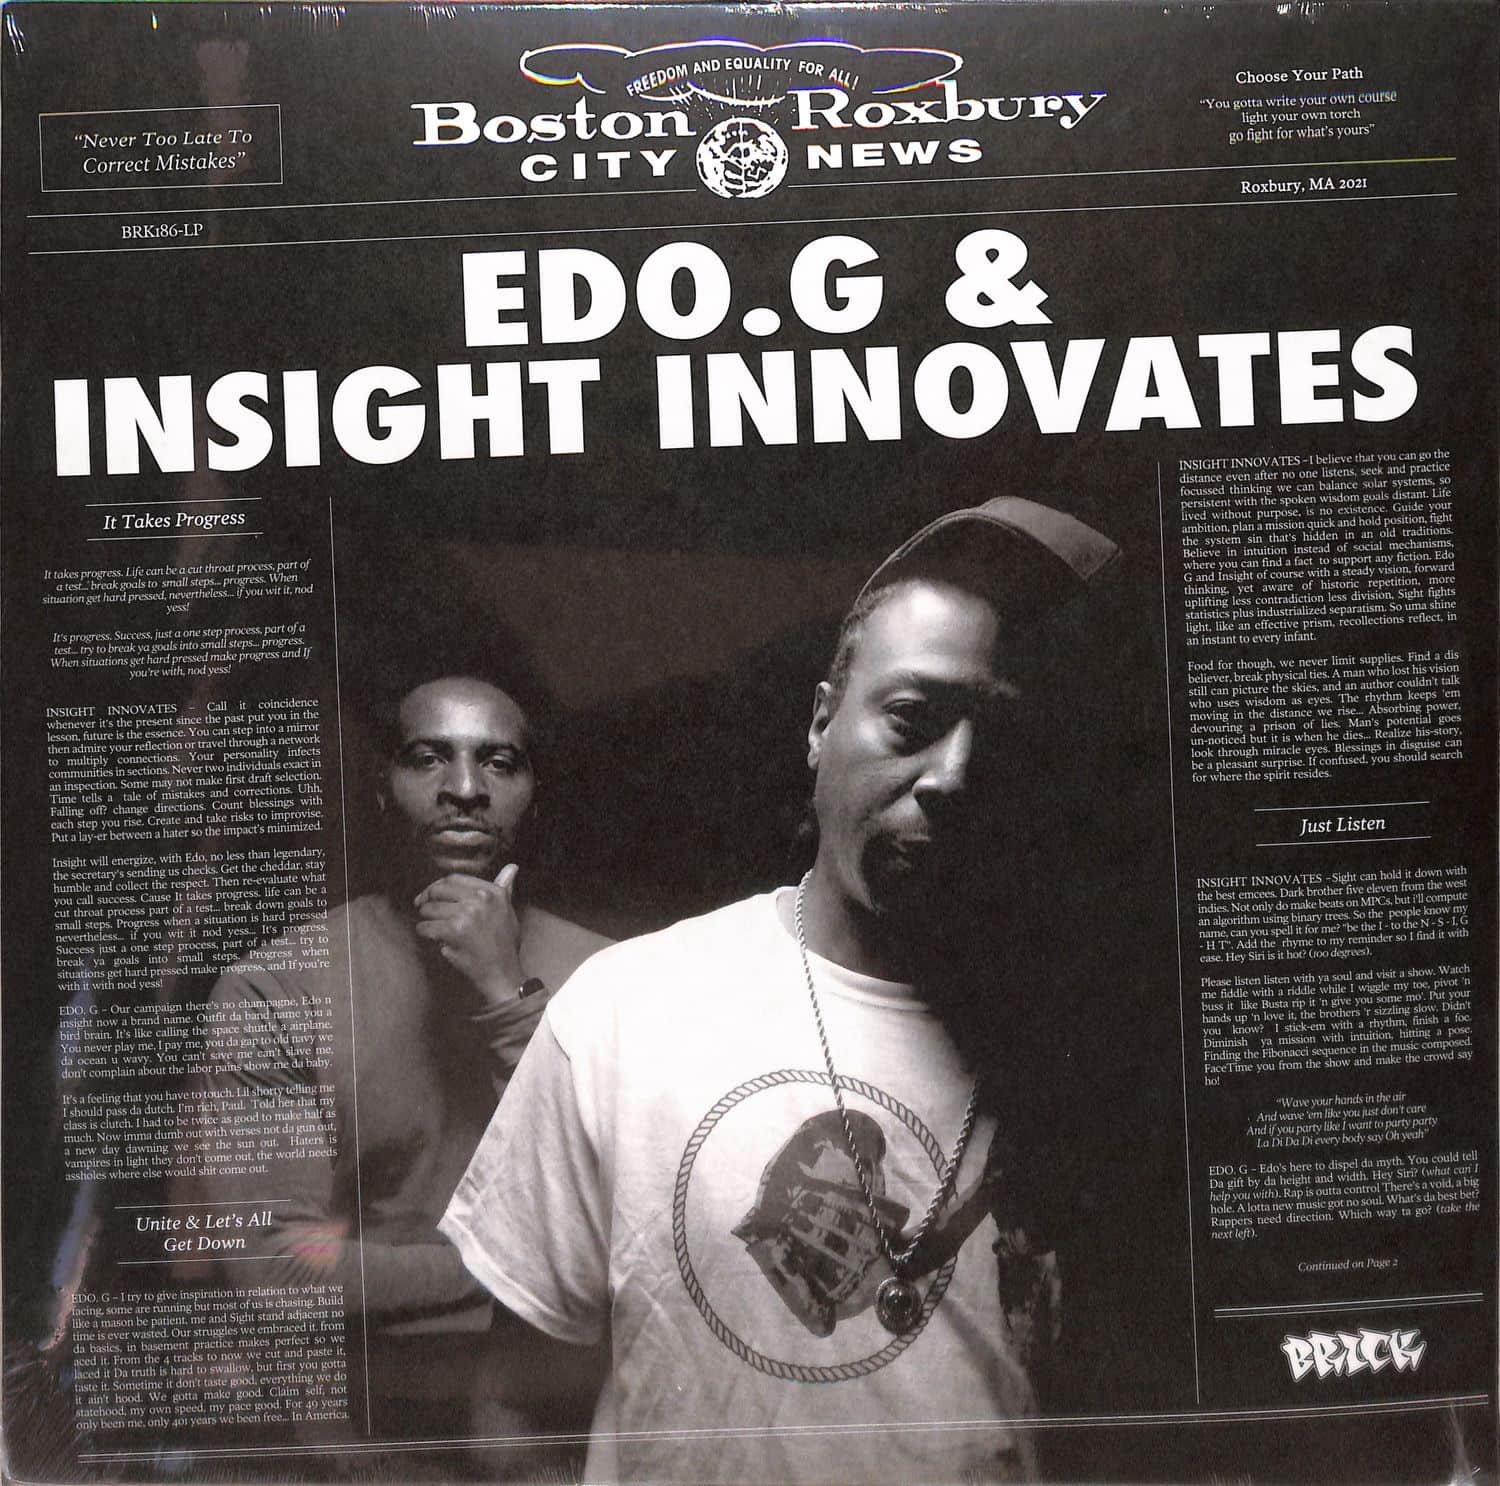 Edo. G & Insight Innovates - EDO. G & INSIGHT INNOVATES